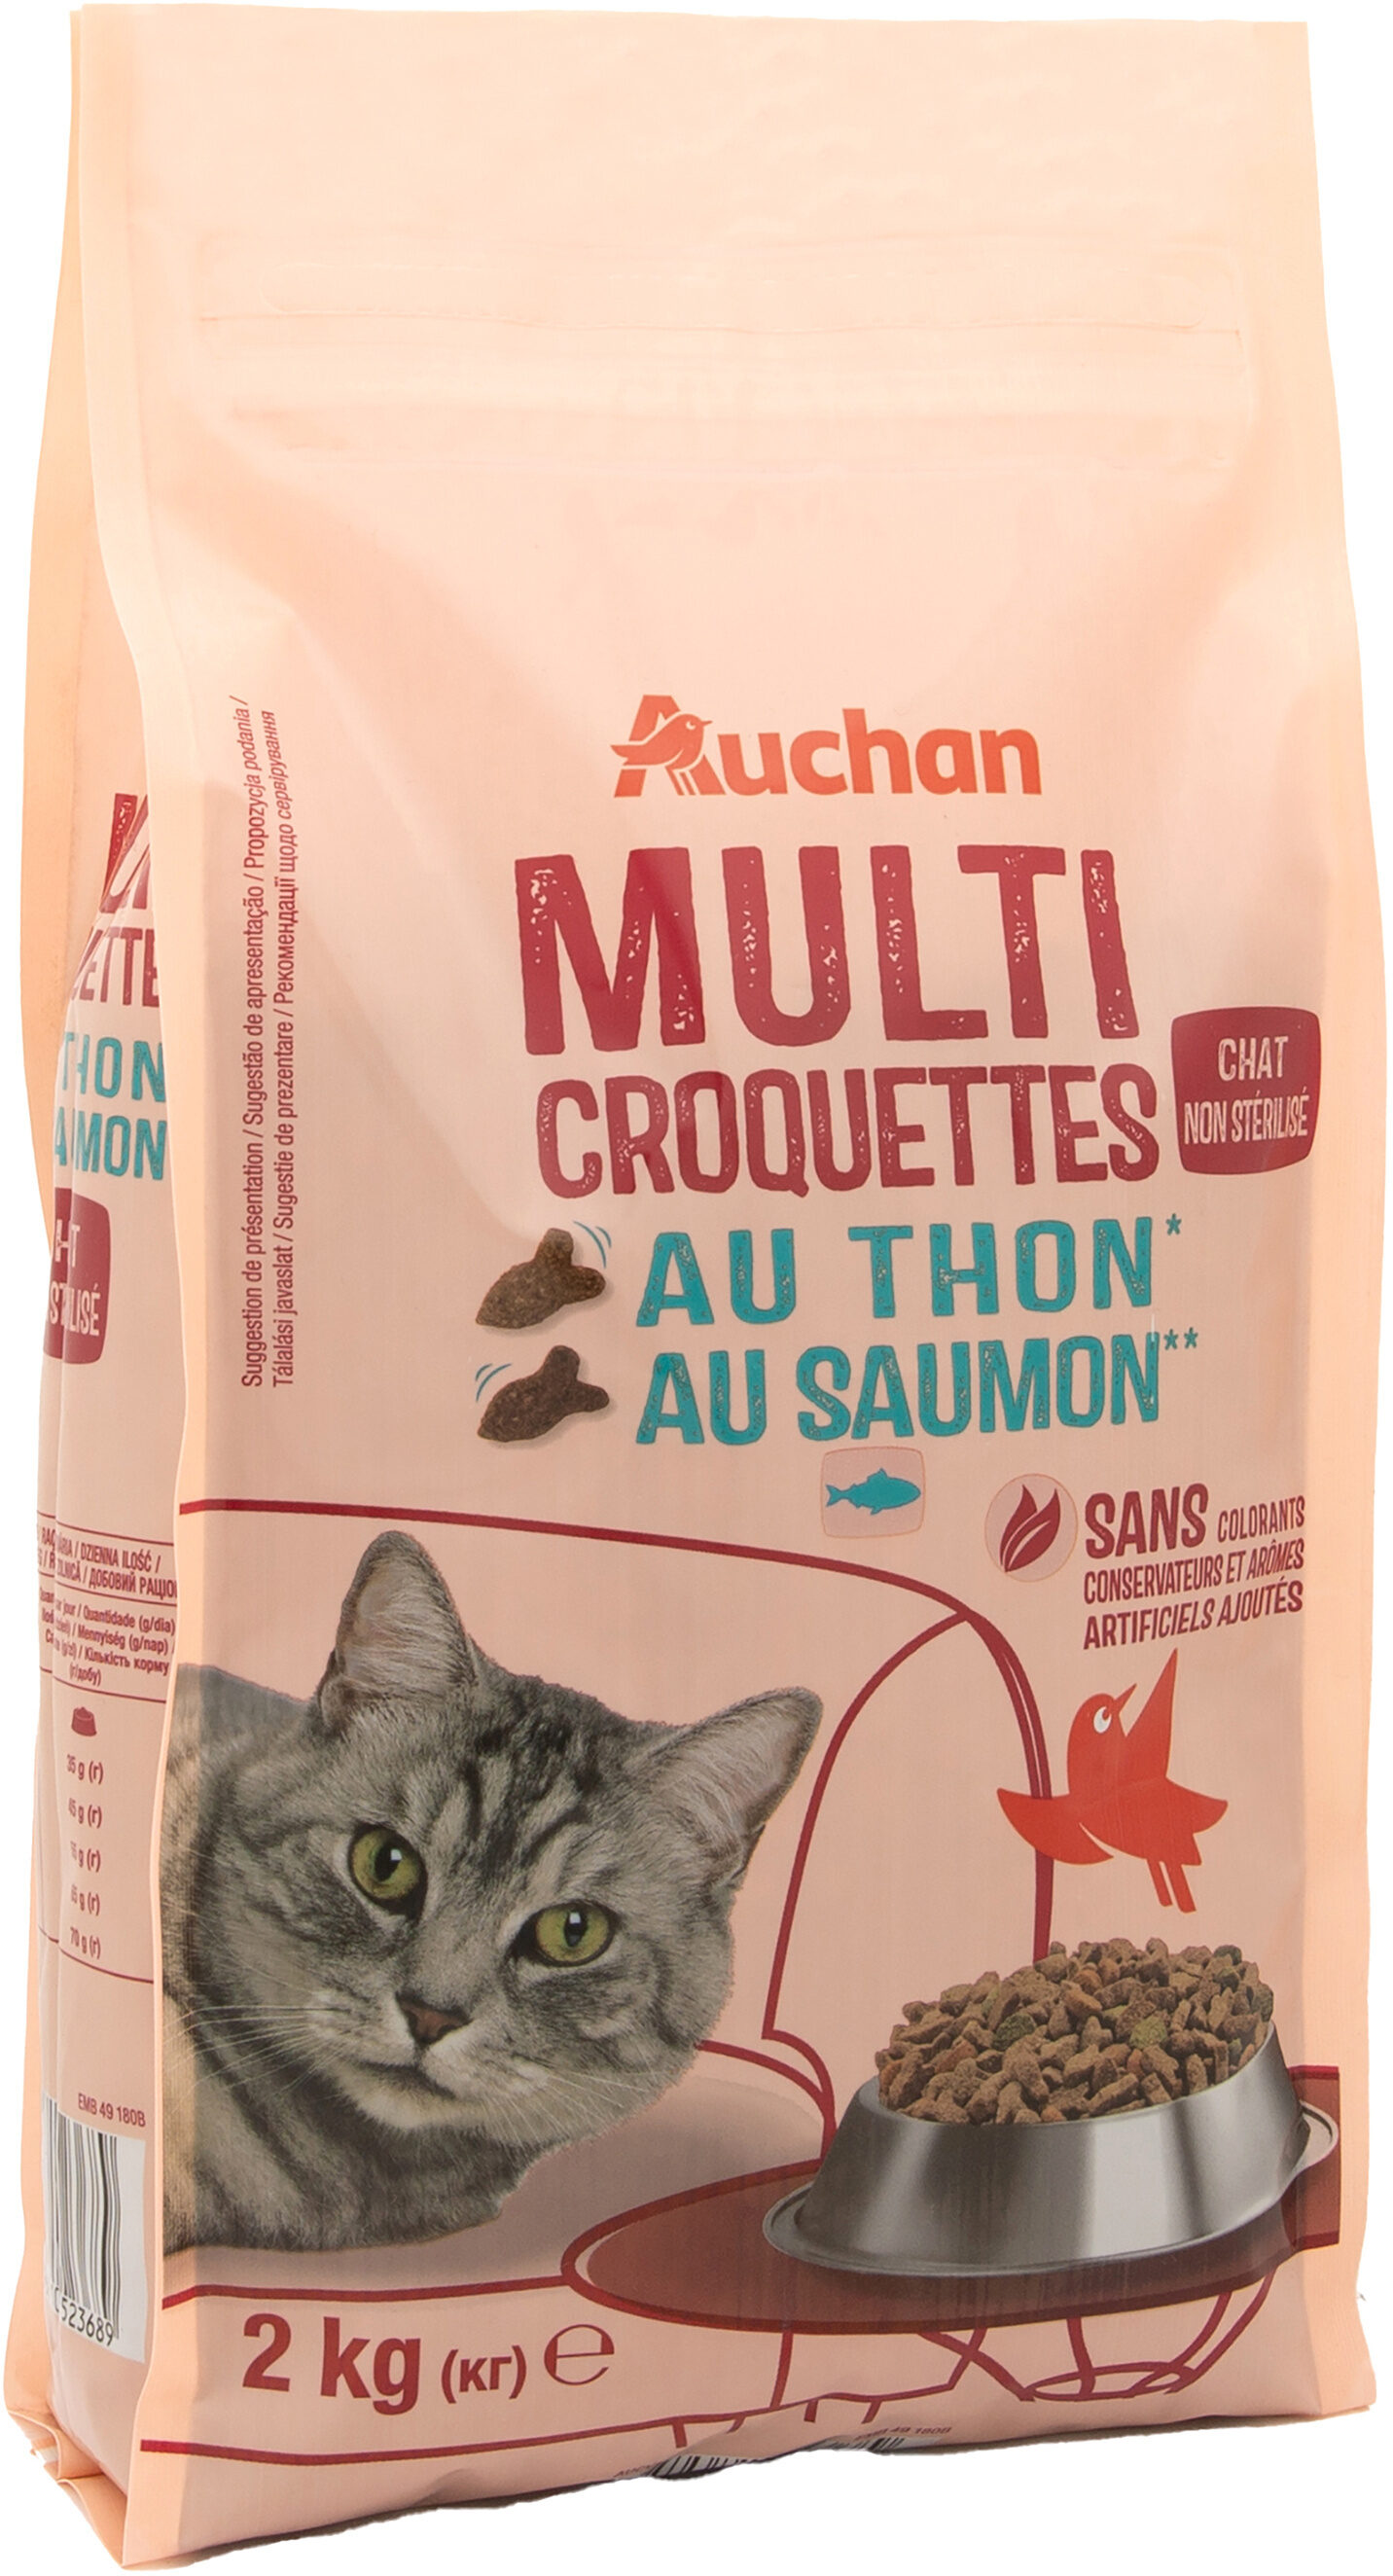 Multicroquettes au thon* au saumon** - Chat non stérilisé - Product - fr